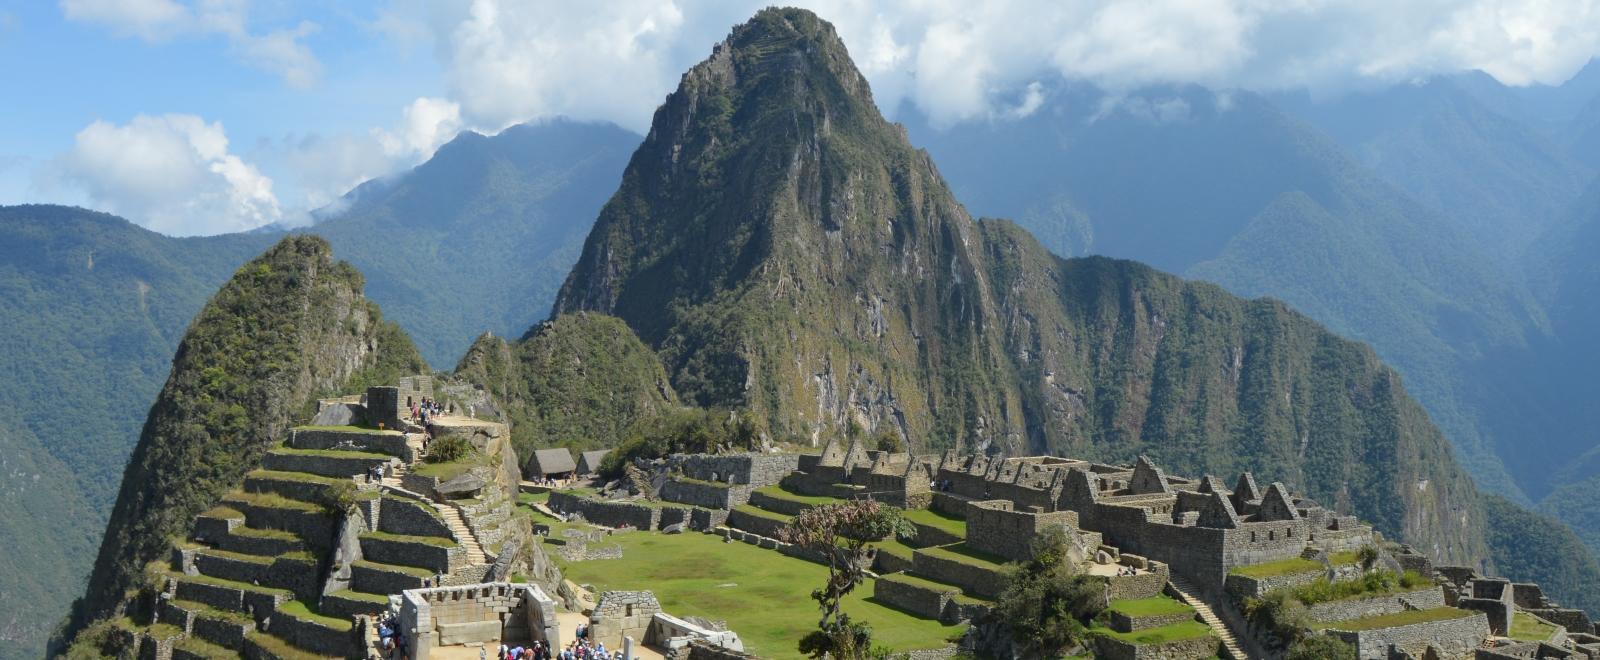 Préparez votre voyage au Pérou en 3 étapes